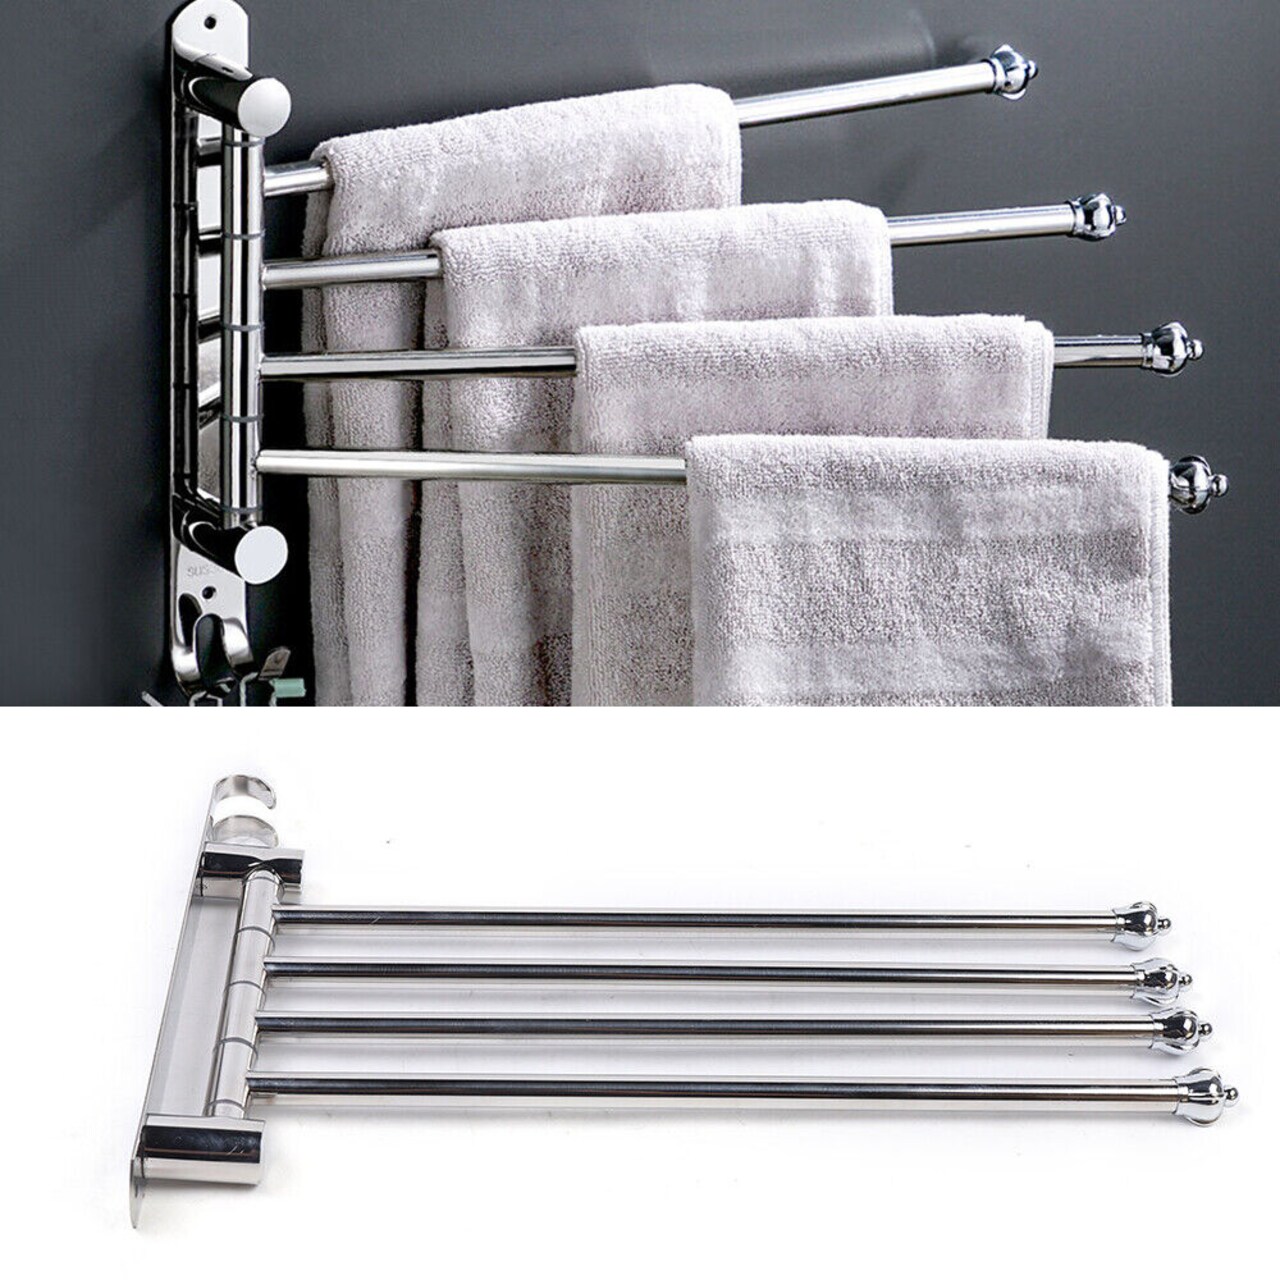 Kitcheniva 4-Arm Stainless Steel Swivel Towel Bar Hanger Wall Mount